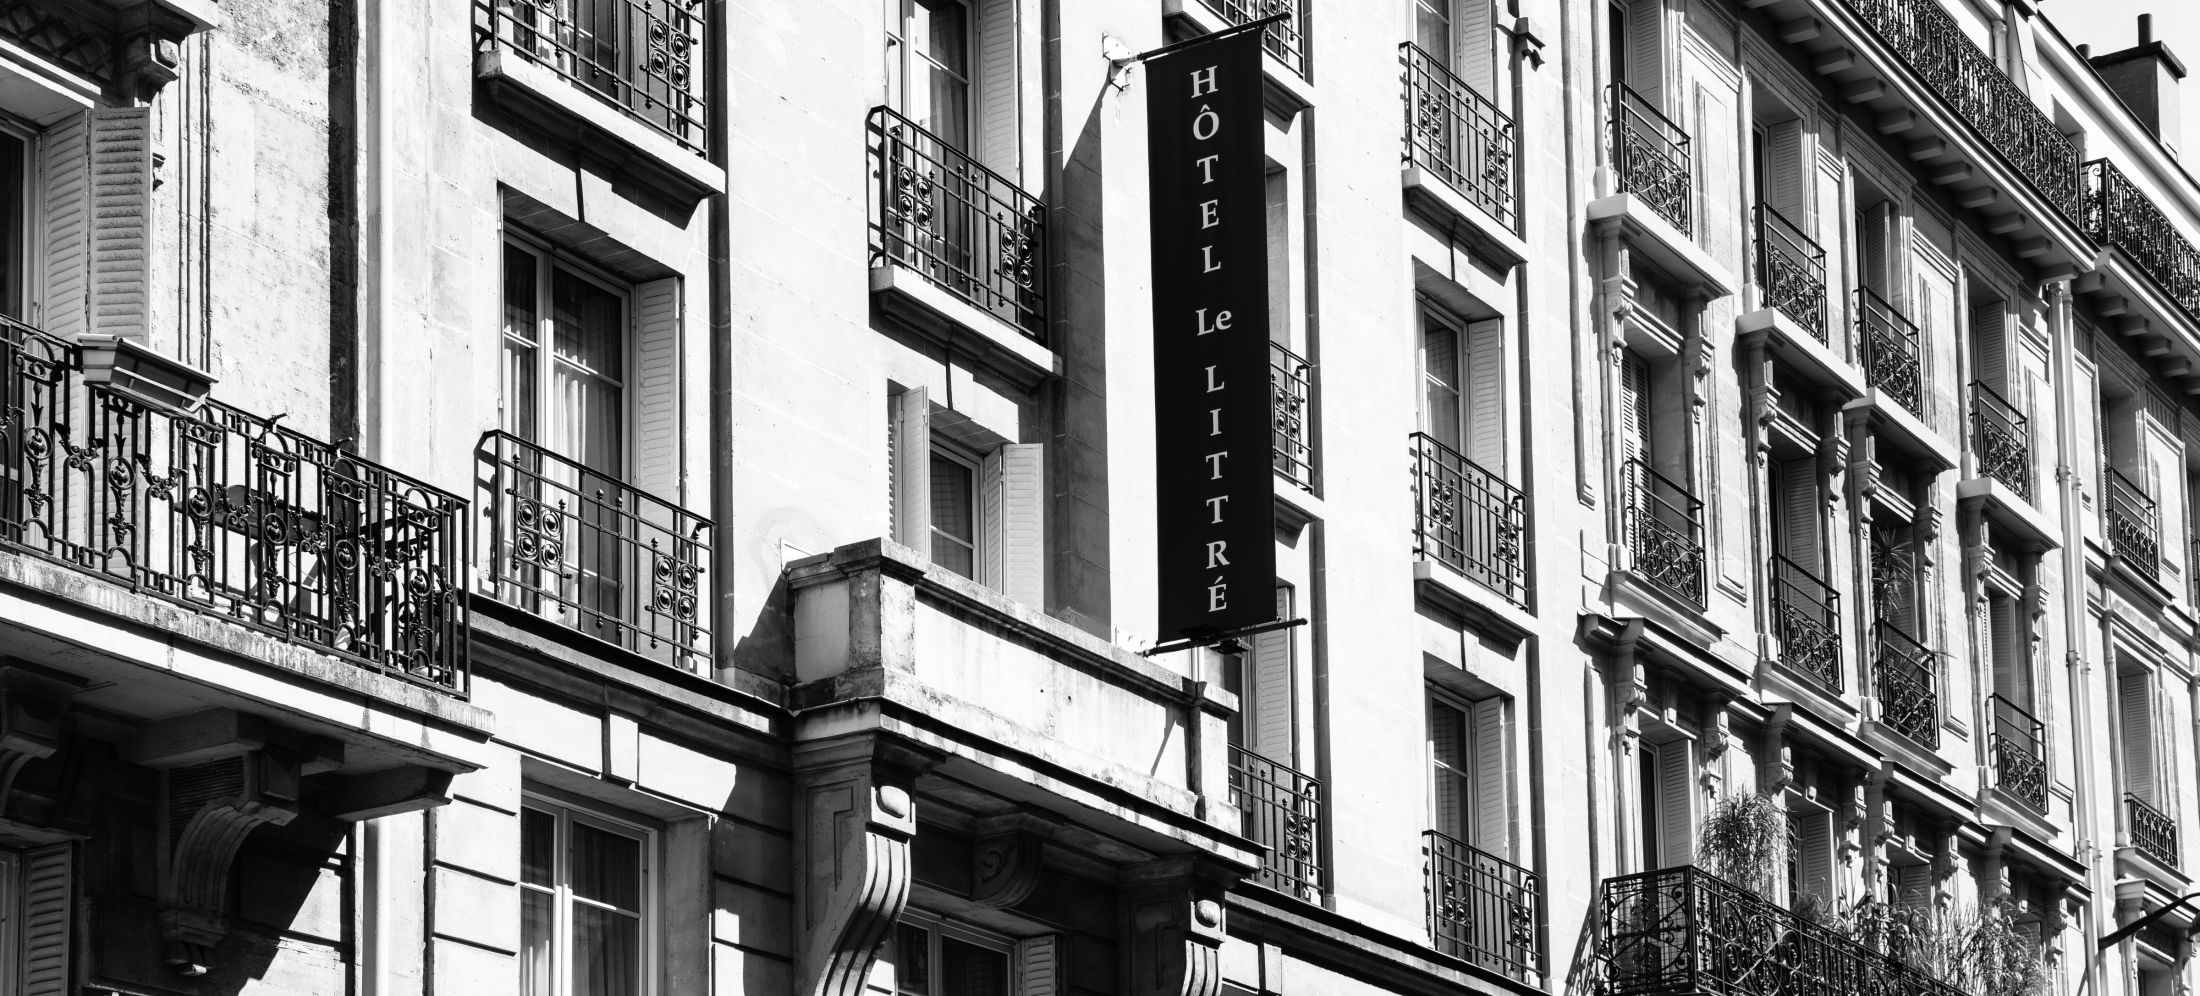 Hotel Le Littré - Details